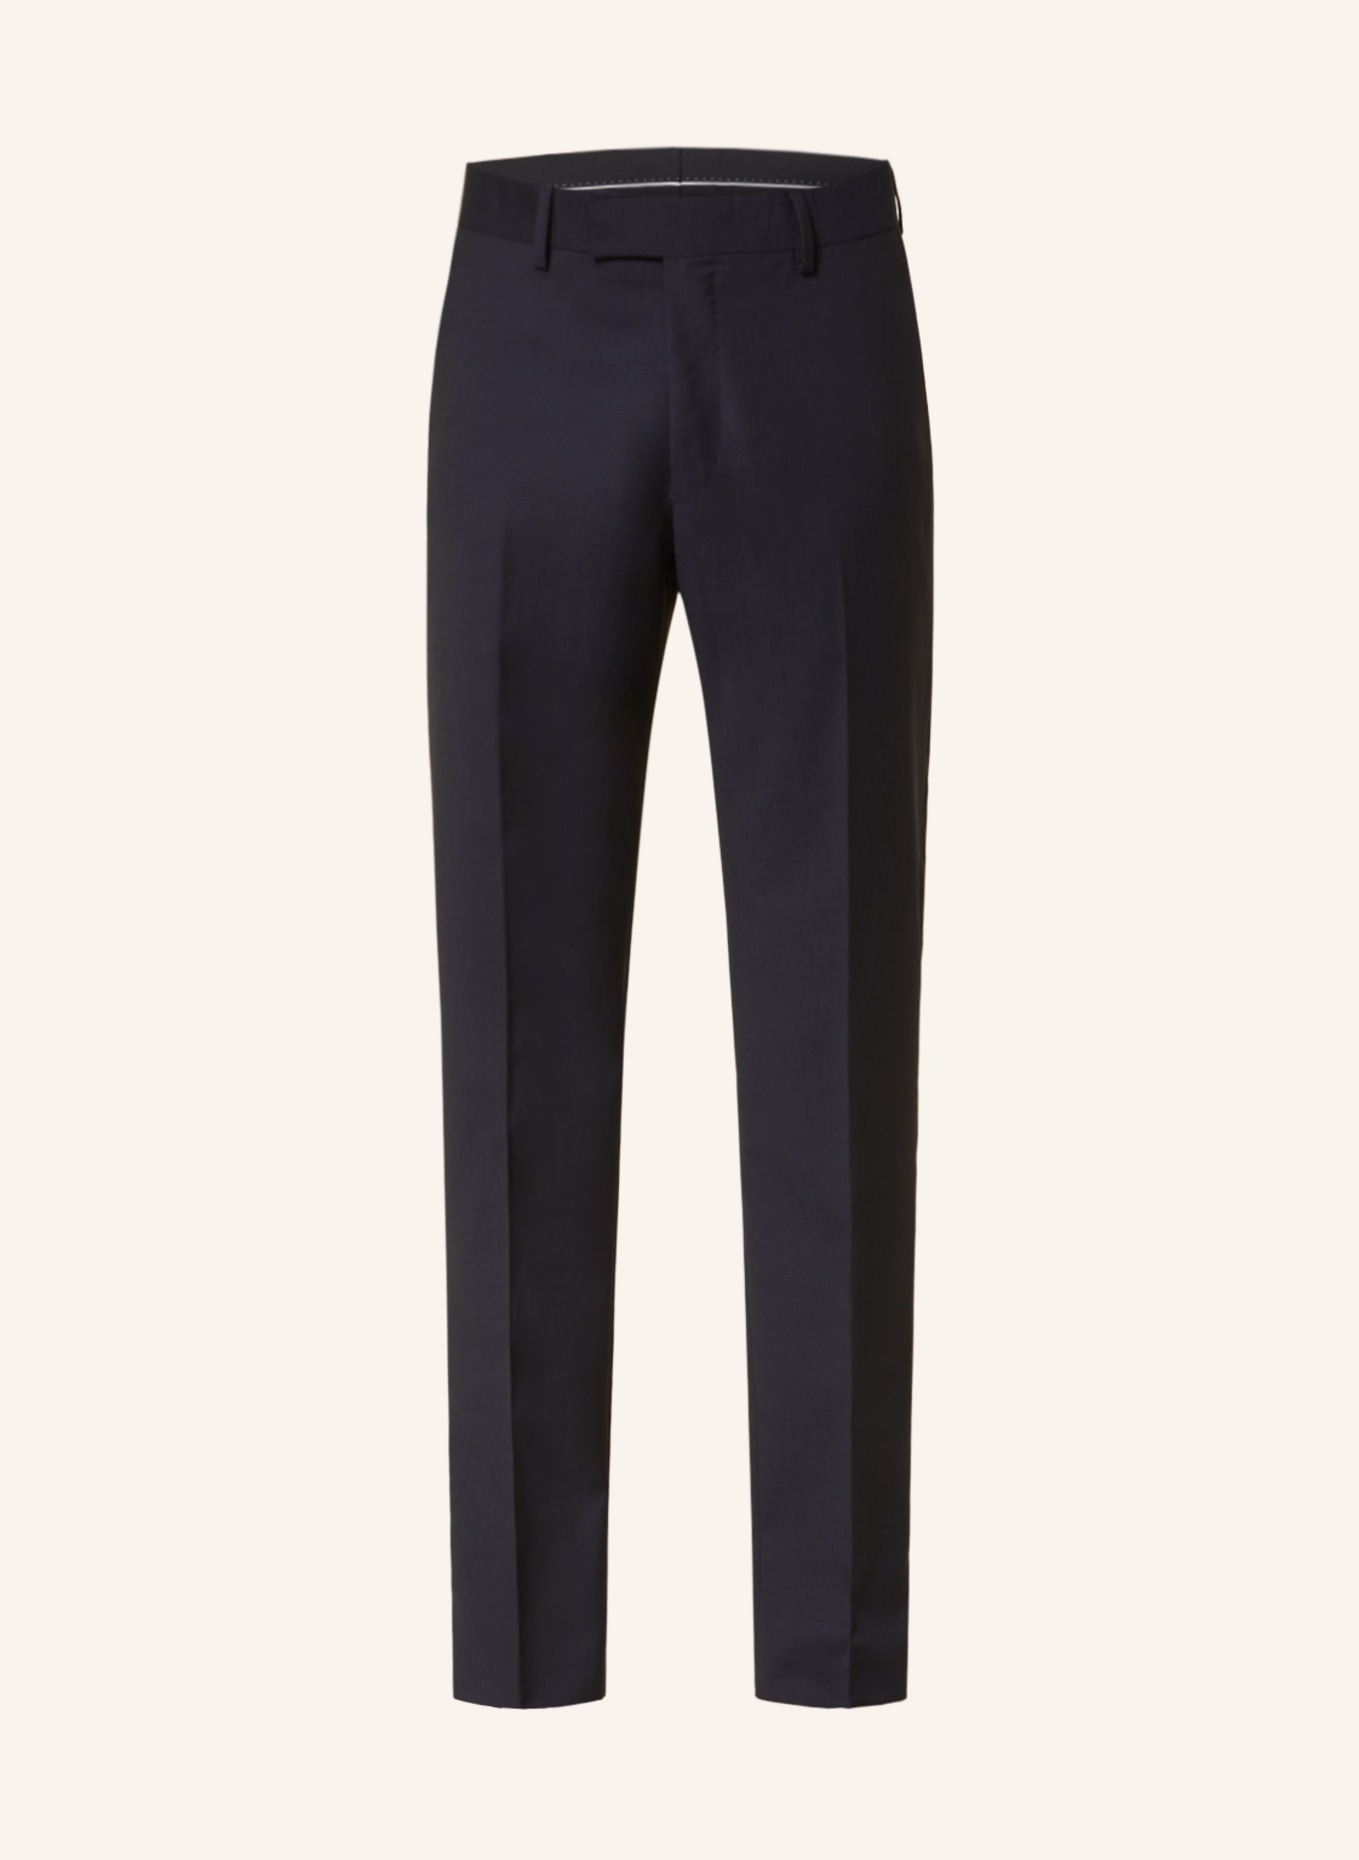 TIGER OF SWEDEN Suit trousers TENUTA slim fit, Color: 284 LIGHT INK (Image 1)